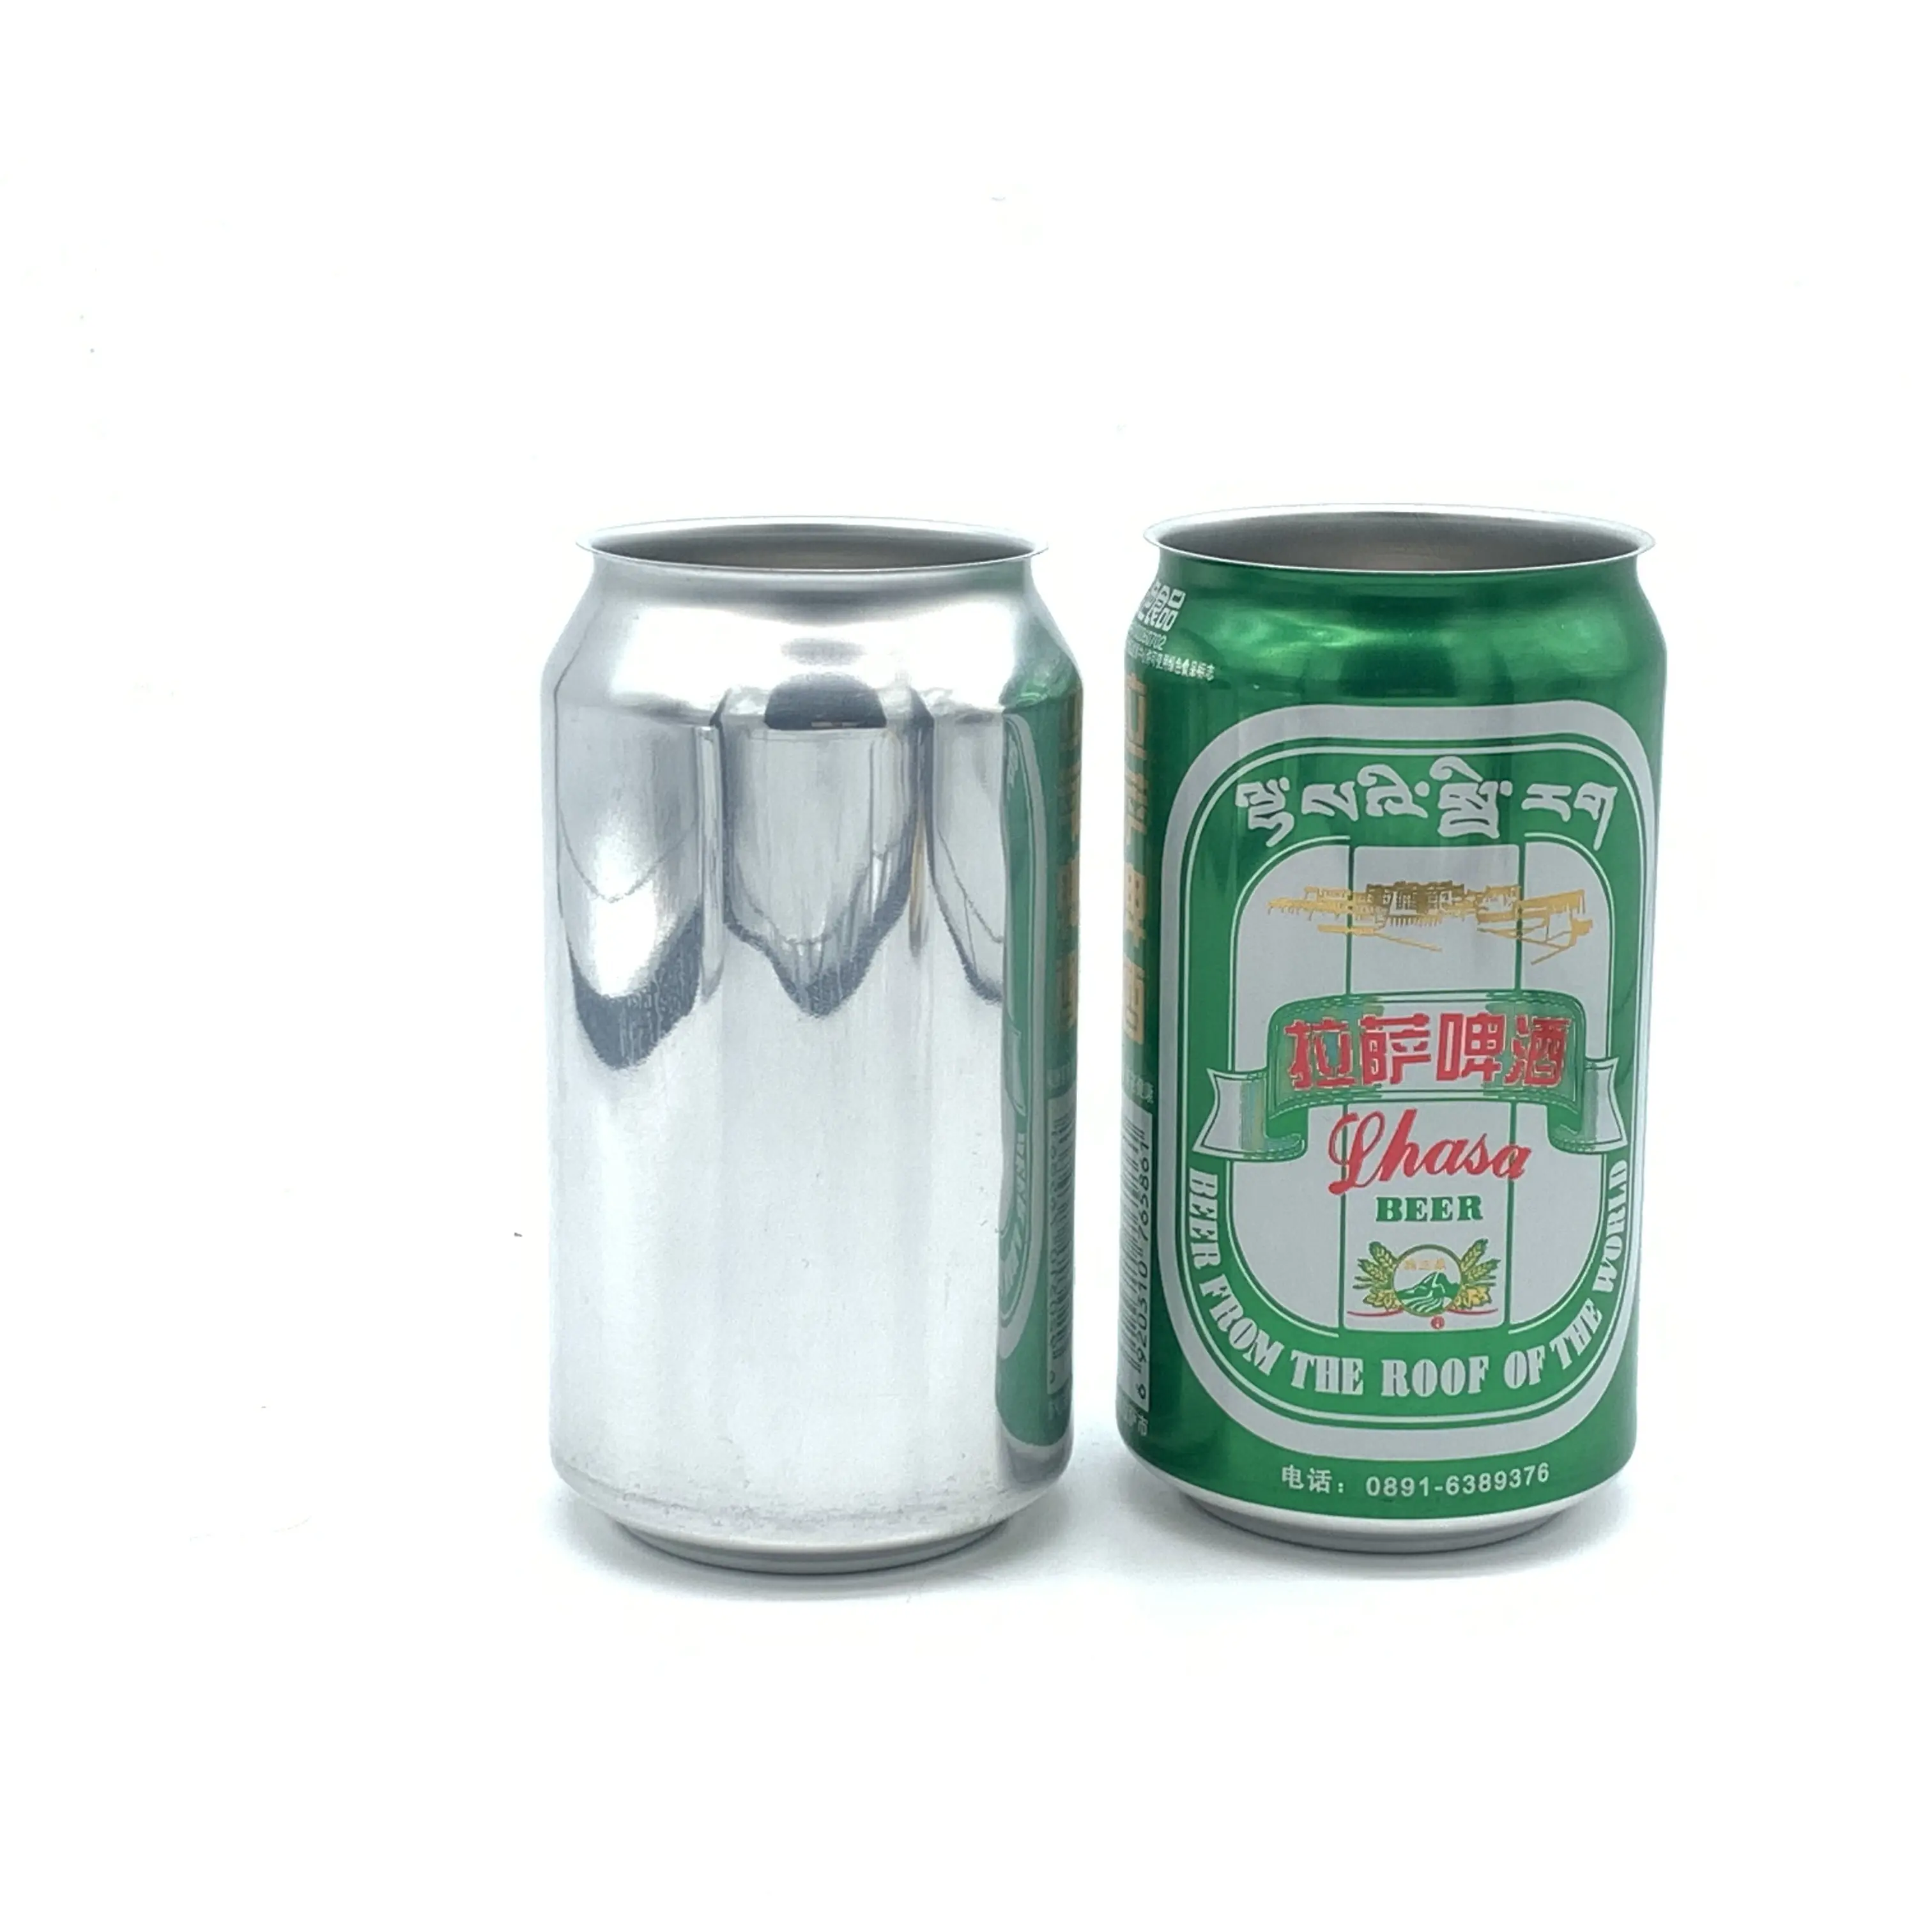 משקה אנרגיה מותאם אישית הדפסת אריזת משקה בירה מתכת ריקה פחית אלומיניום 250 מ""ל 355 מ""ל 330 מ""ל פחיות סודה דקיקות ומסודרות עם מכסה